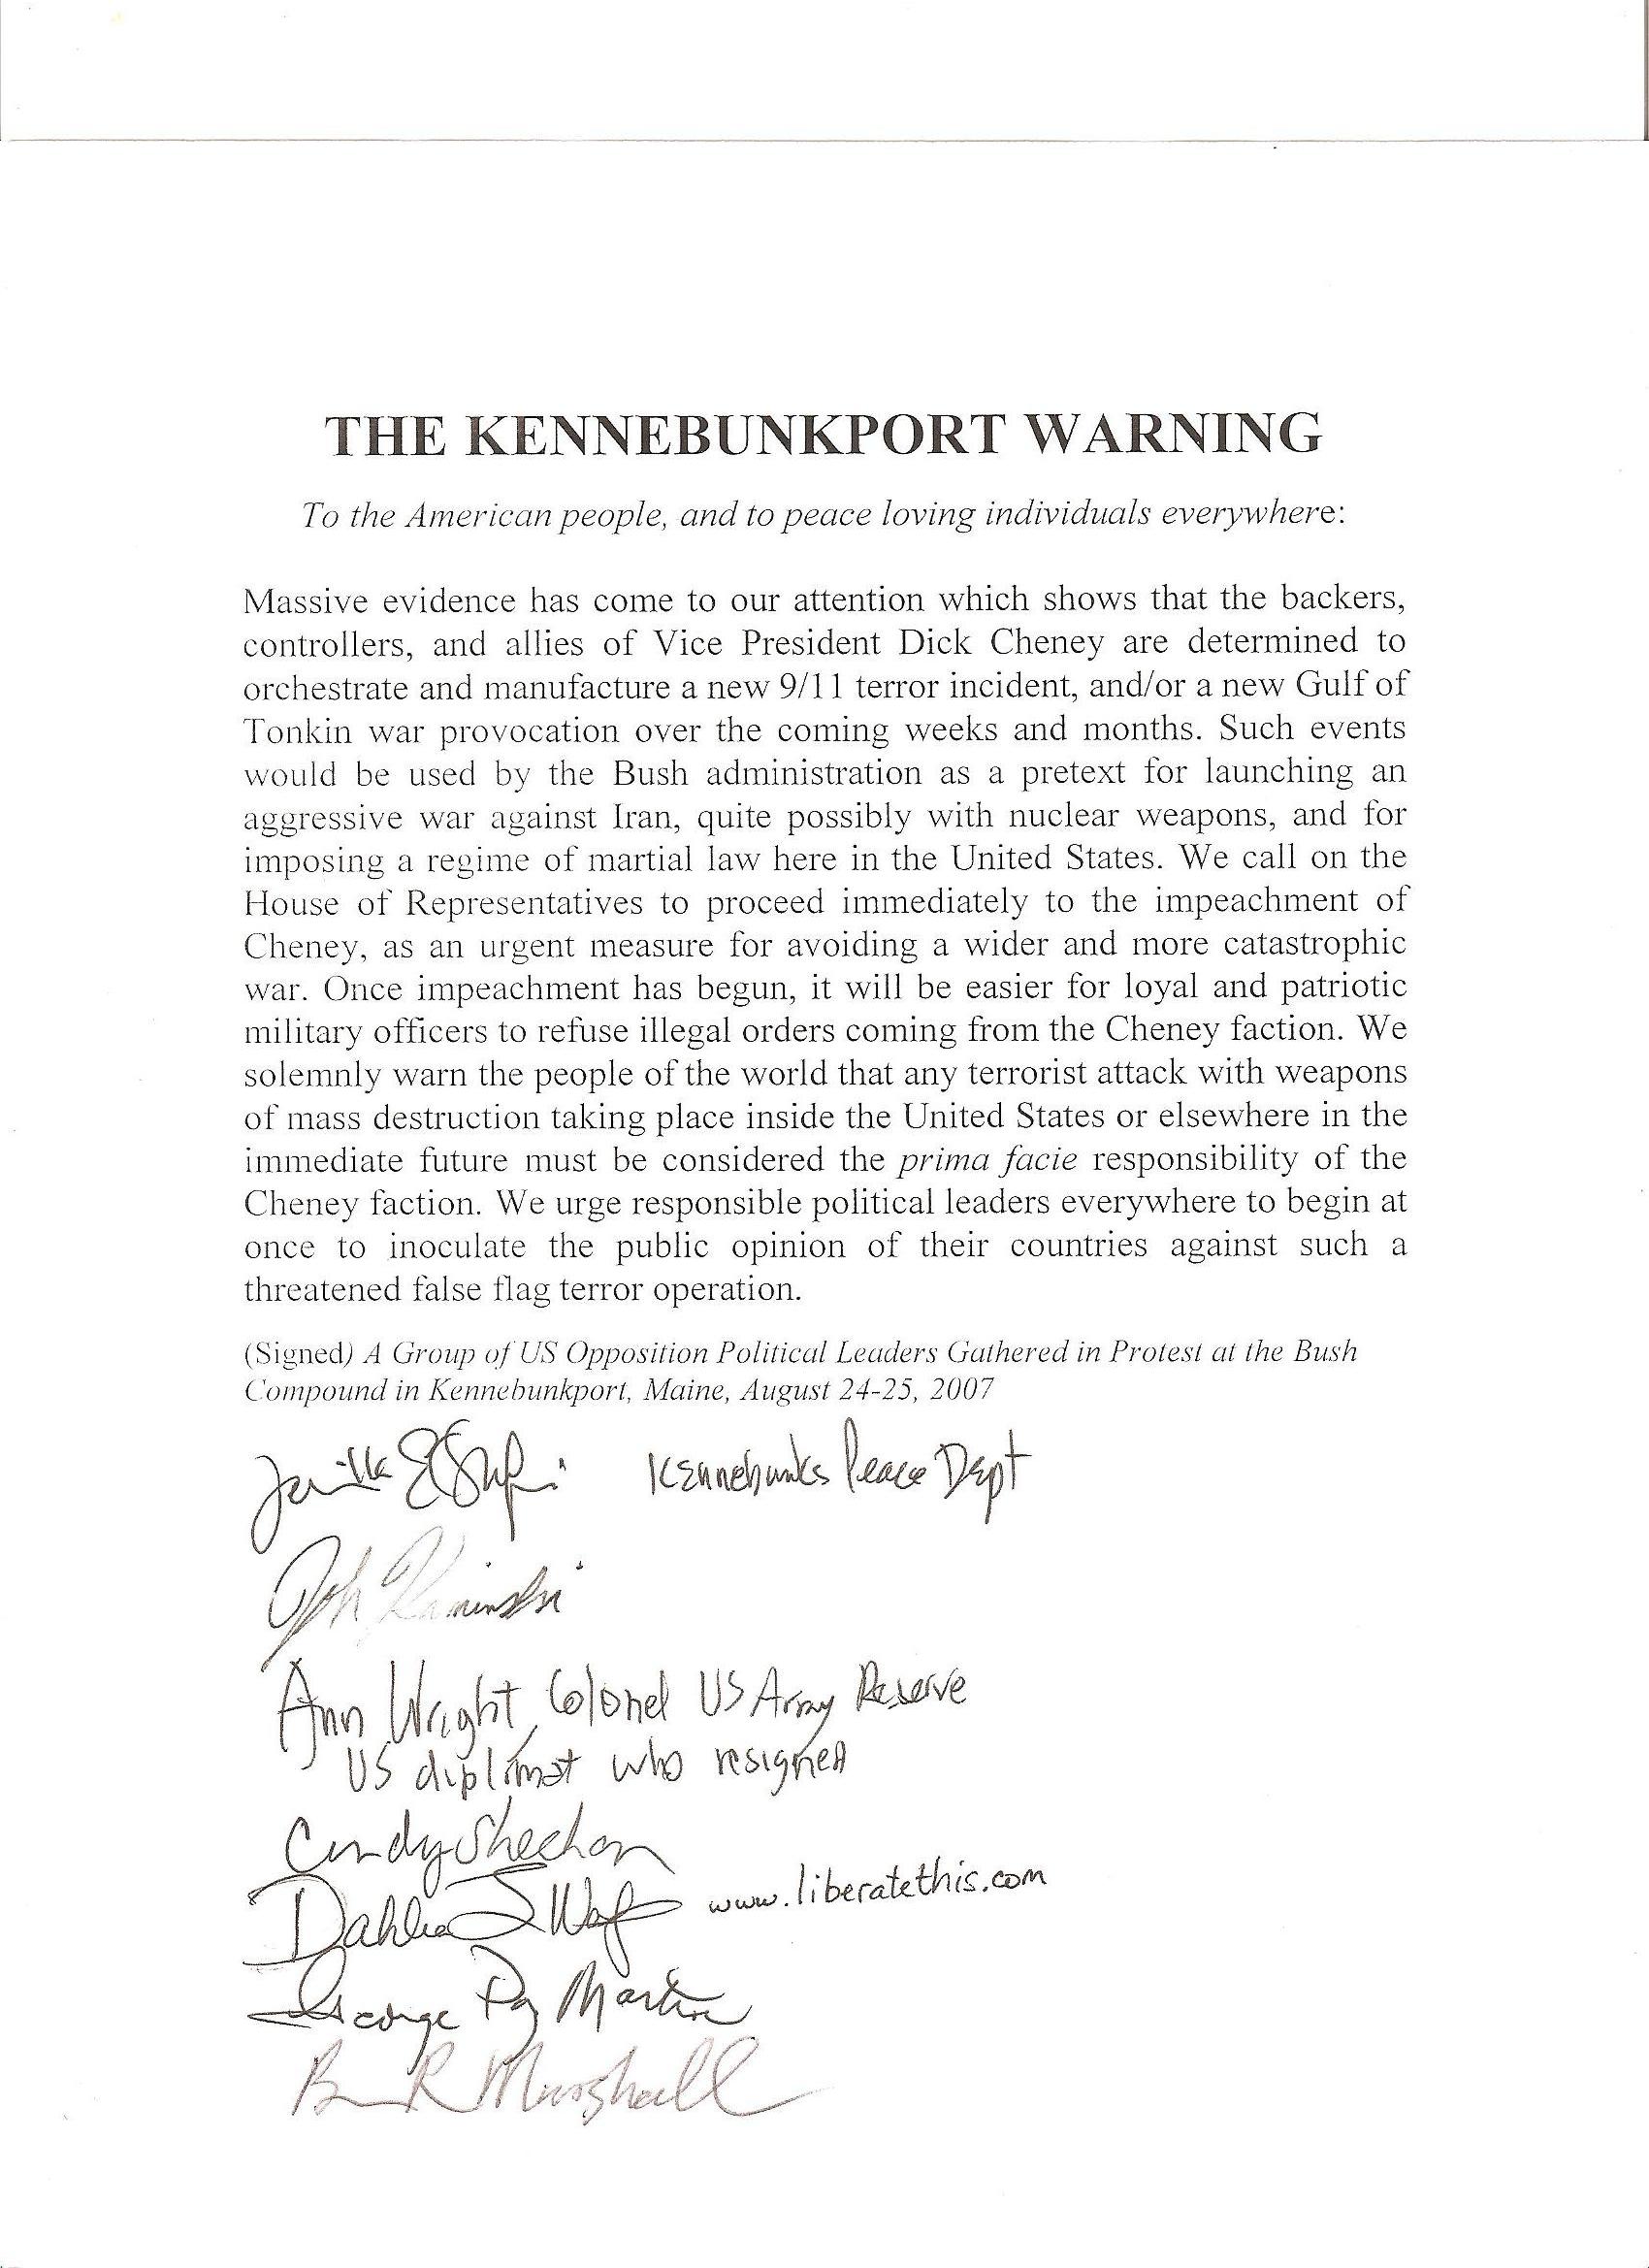 Kennebunkport Warning